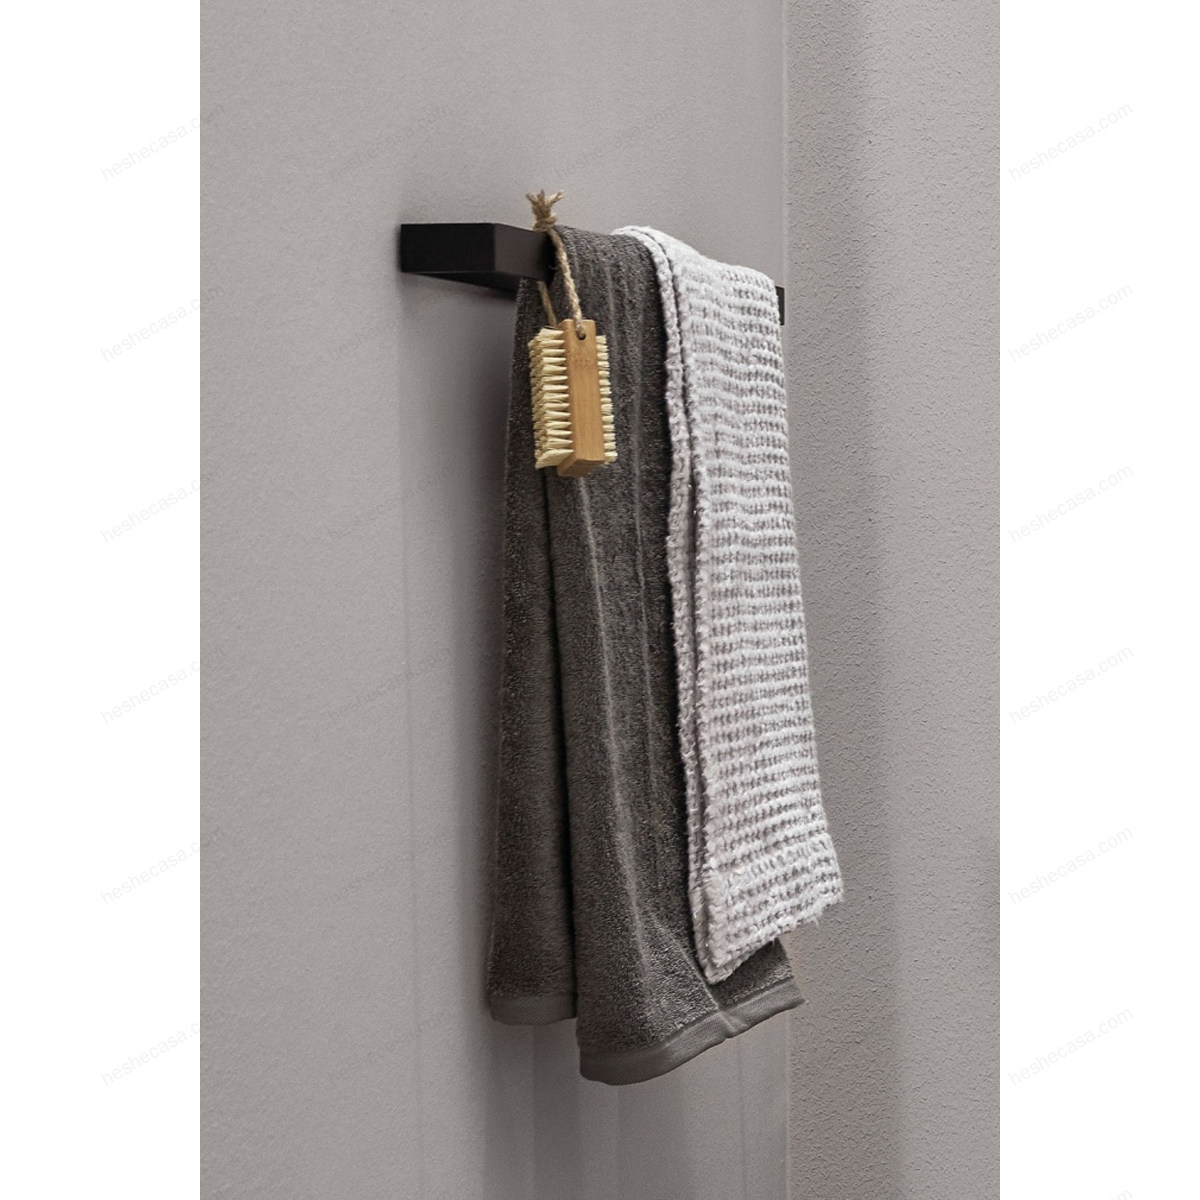 Towel Rail 毛巾架